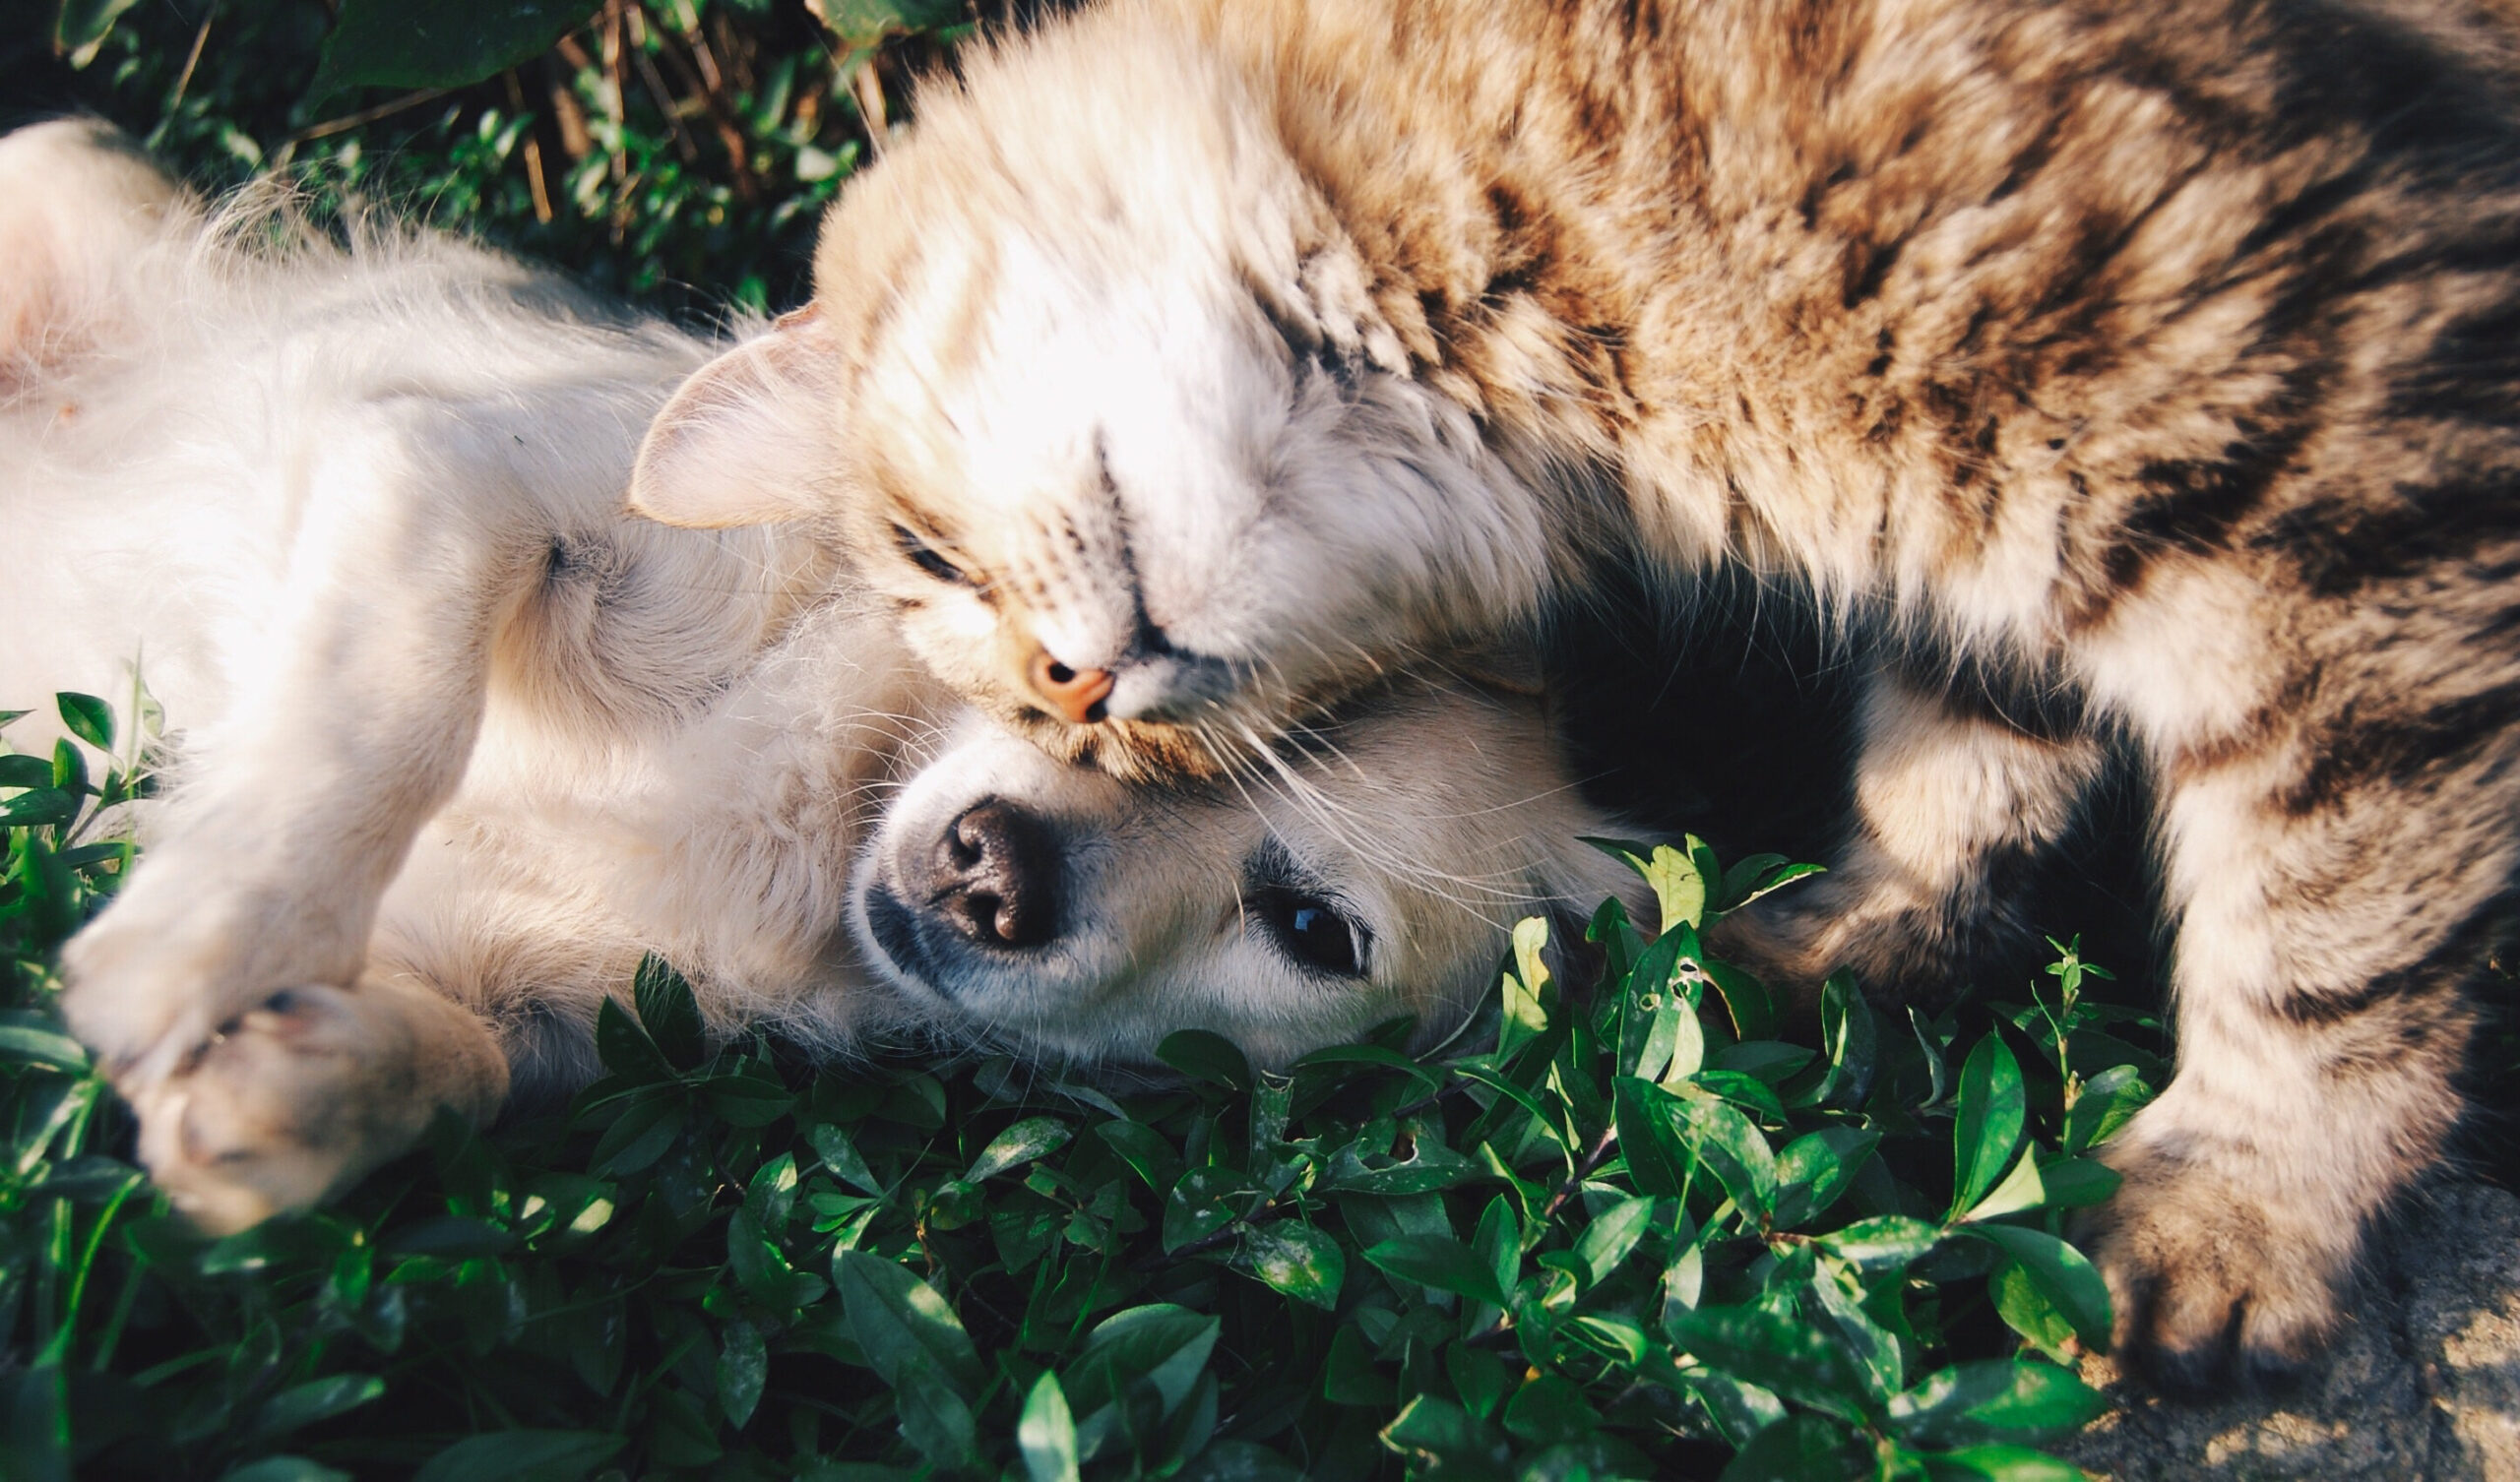 La photo de deux animaux, un chien et un chat, tête contre tête sur de l'herbe.